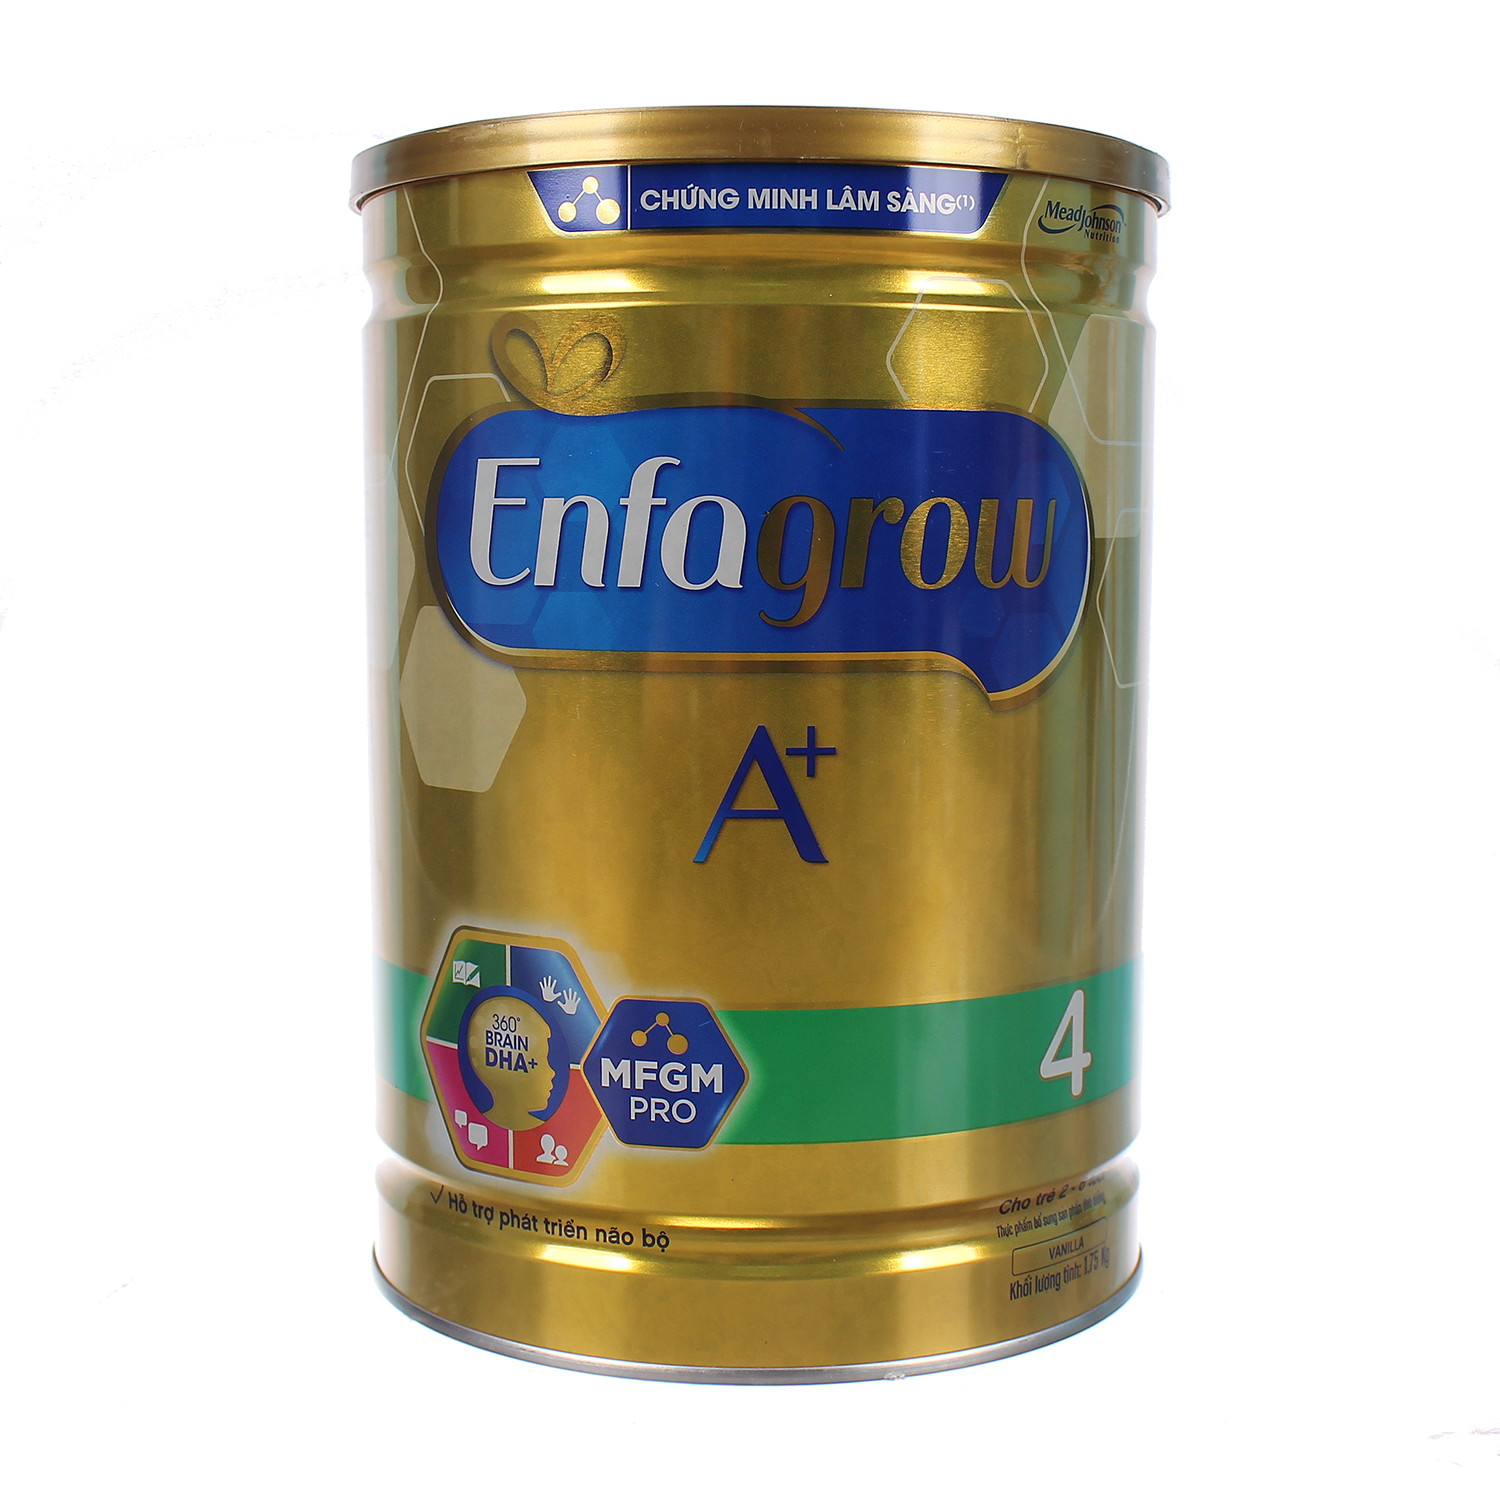 Sữa Enfagrow A+ số 4 870g cho bé 2 - 6 tuổi